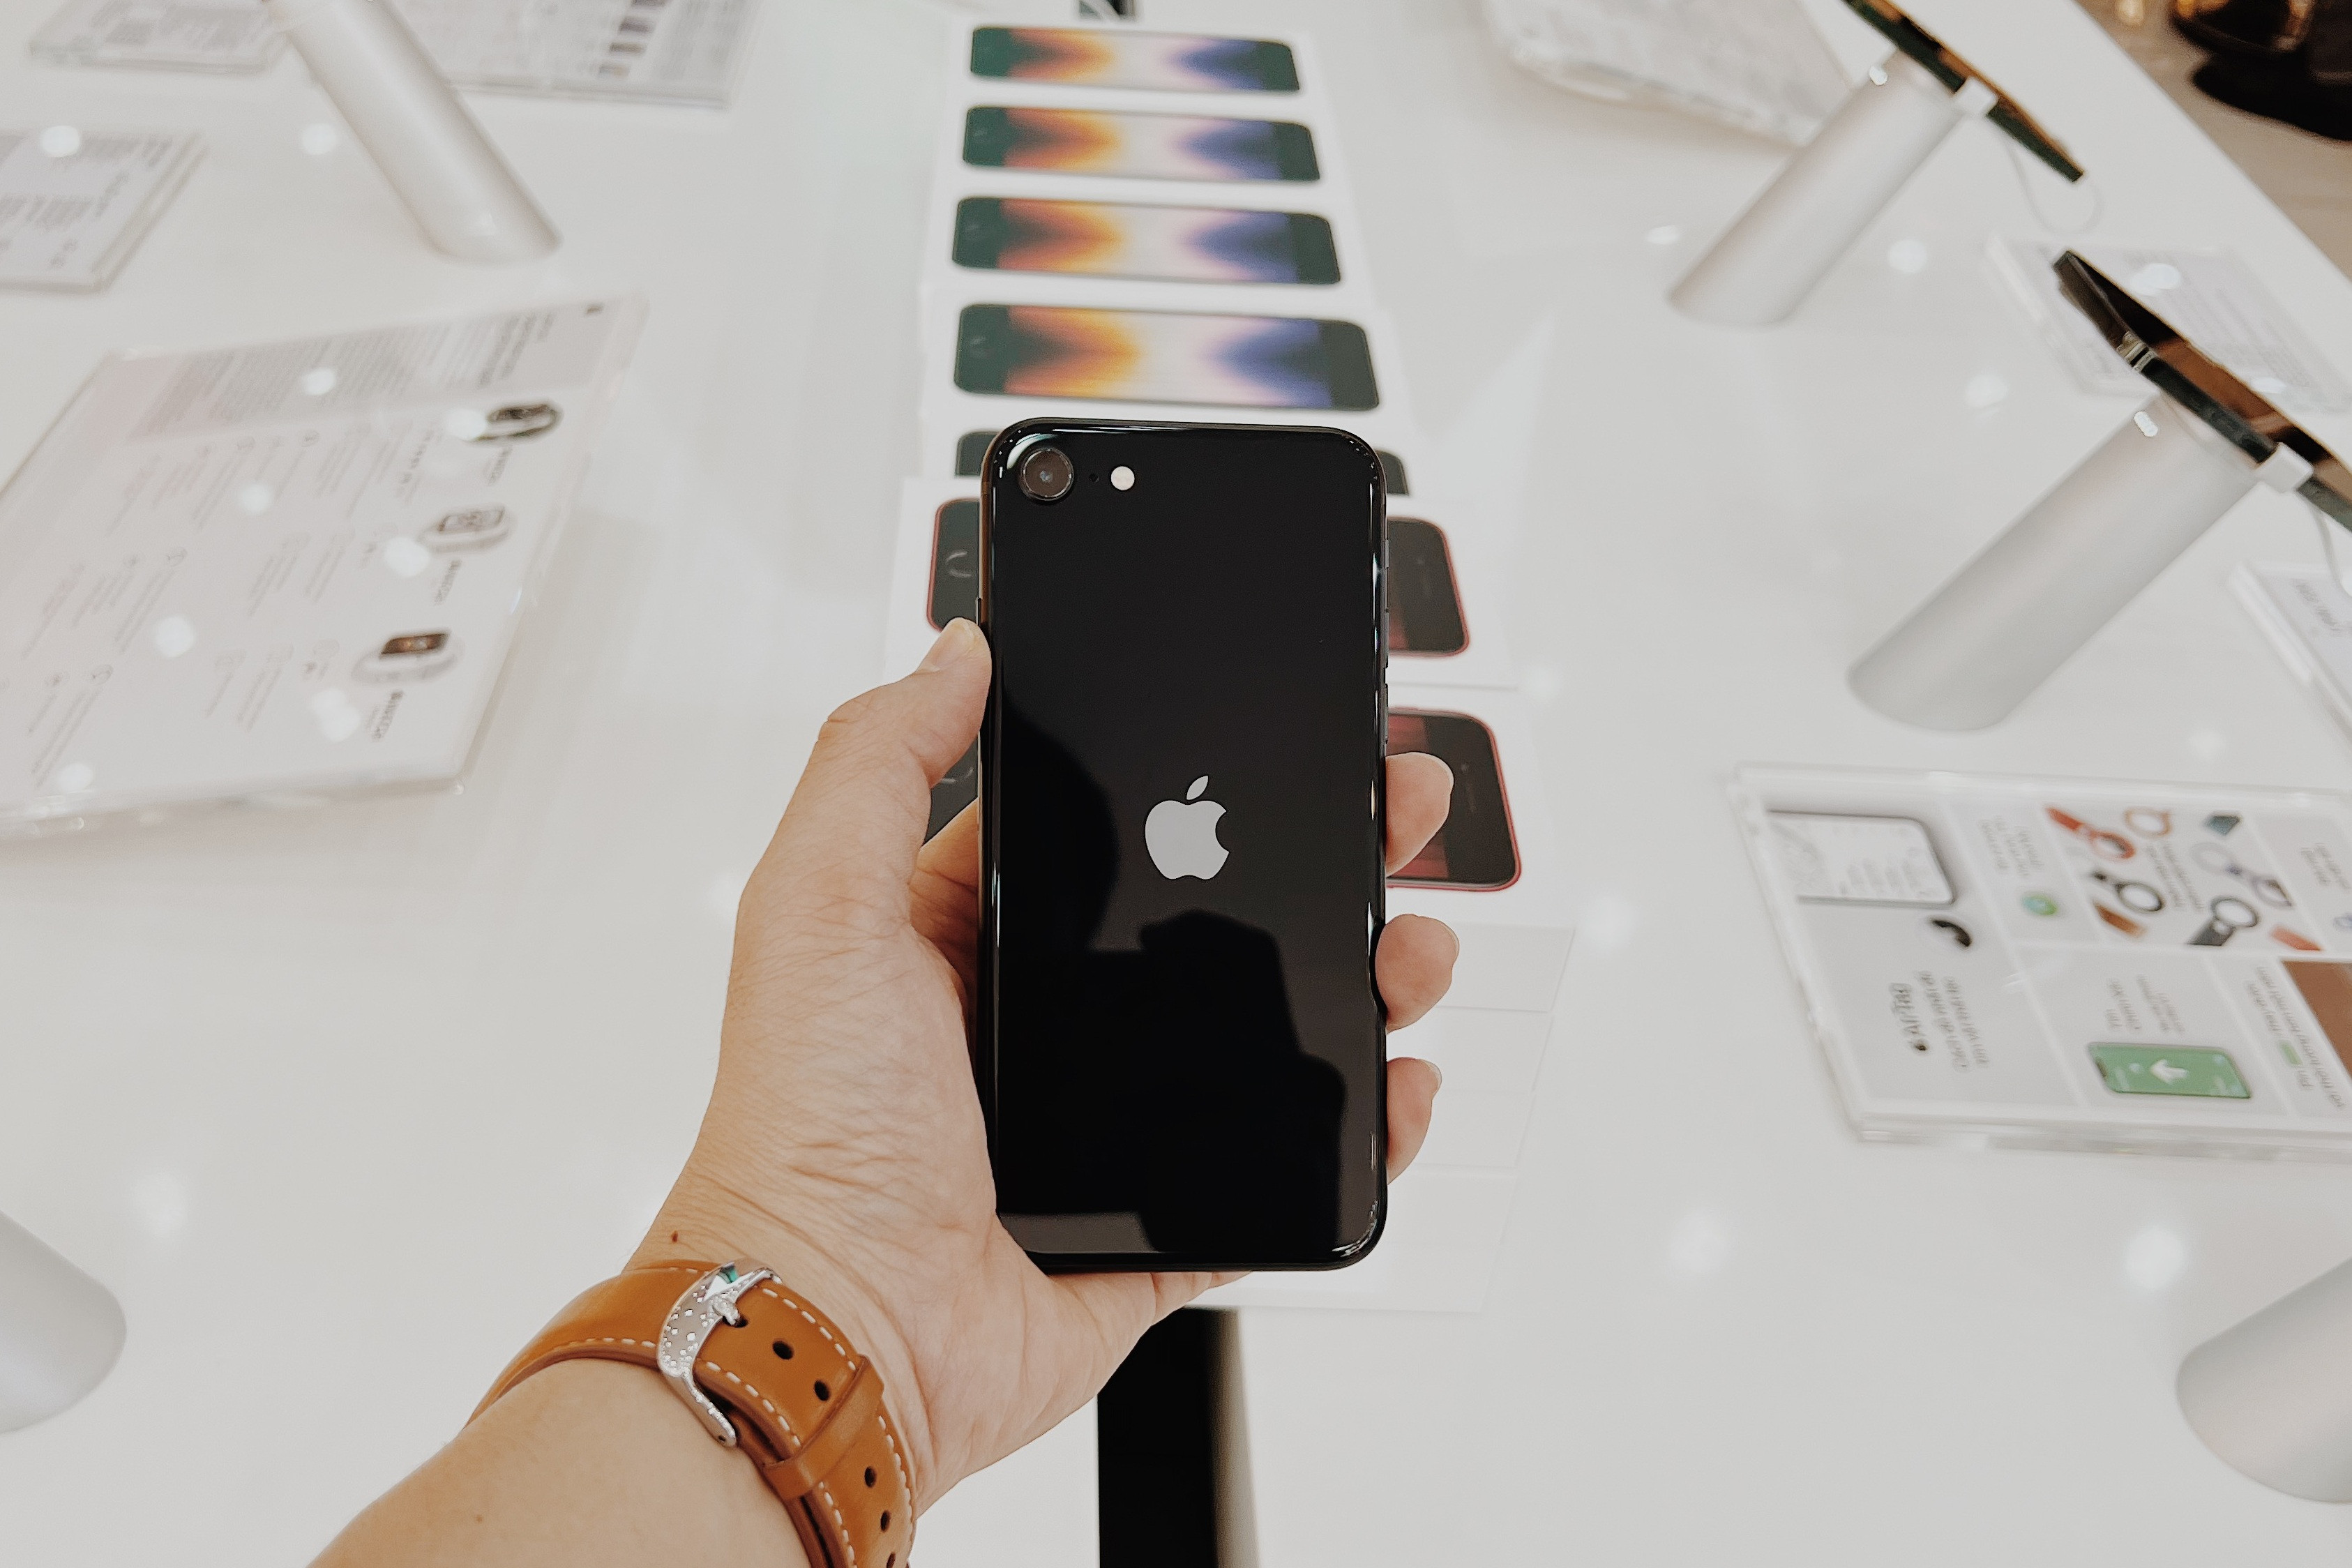 Chiếc iPhone thất bại nhất của Apple tại Việt Nam